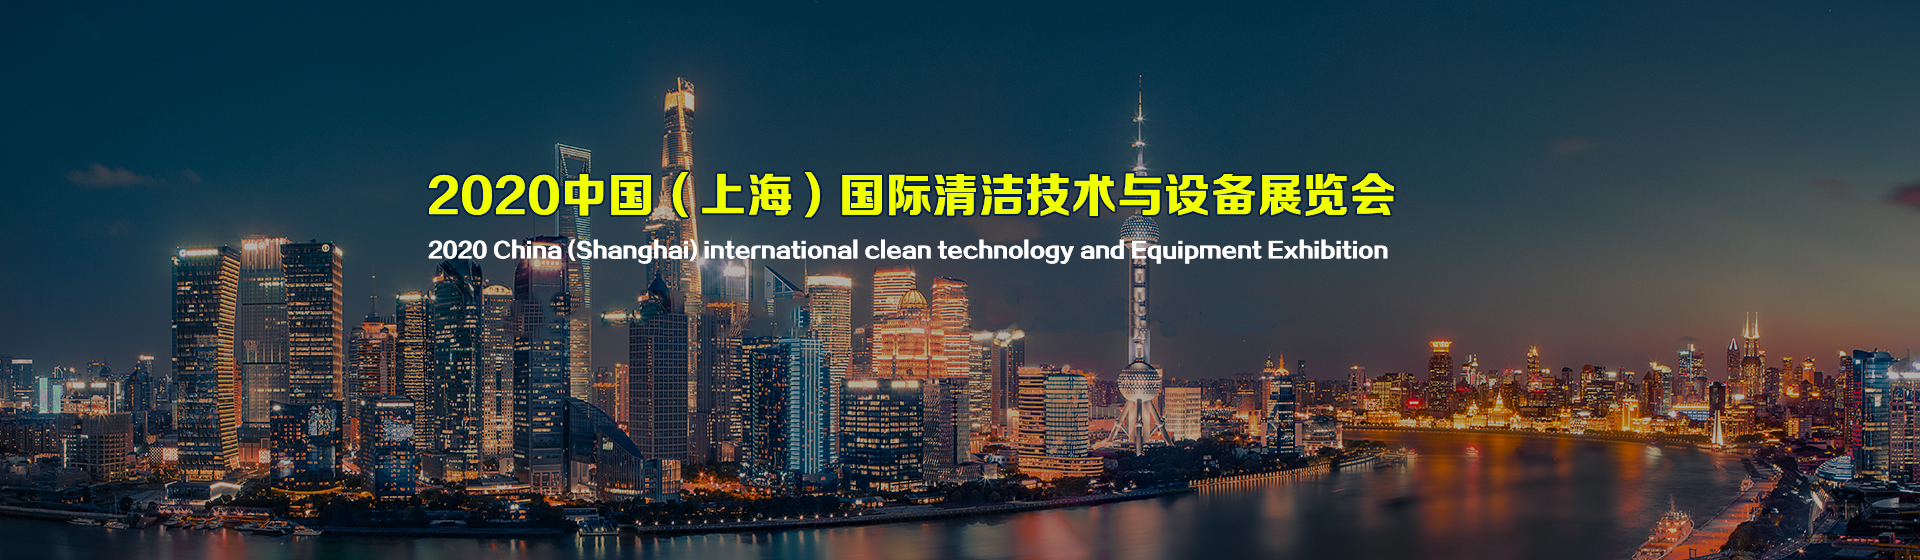 我司于2020年8月12号参加 国际化、权威化、专业化的上海国际清洁技术与设备博览会 敬请光临指导洽谈！